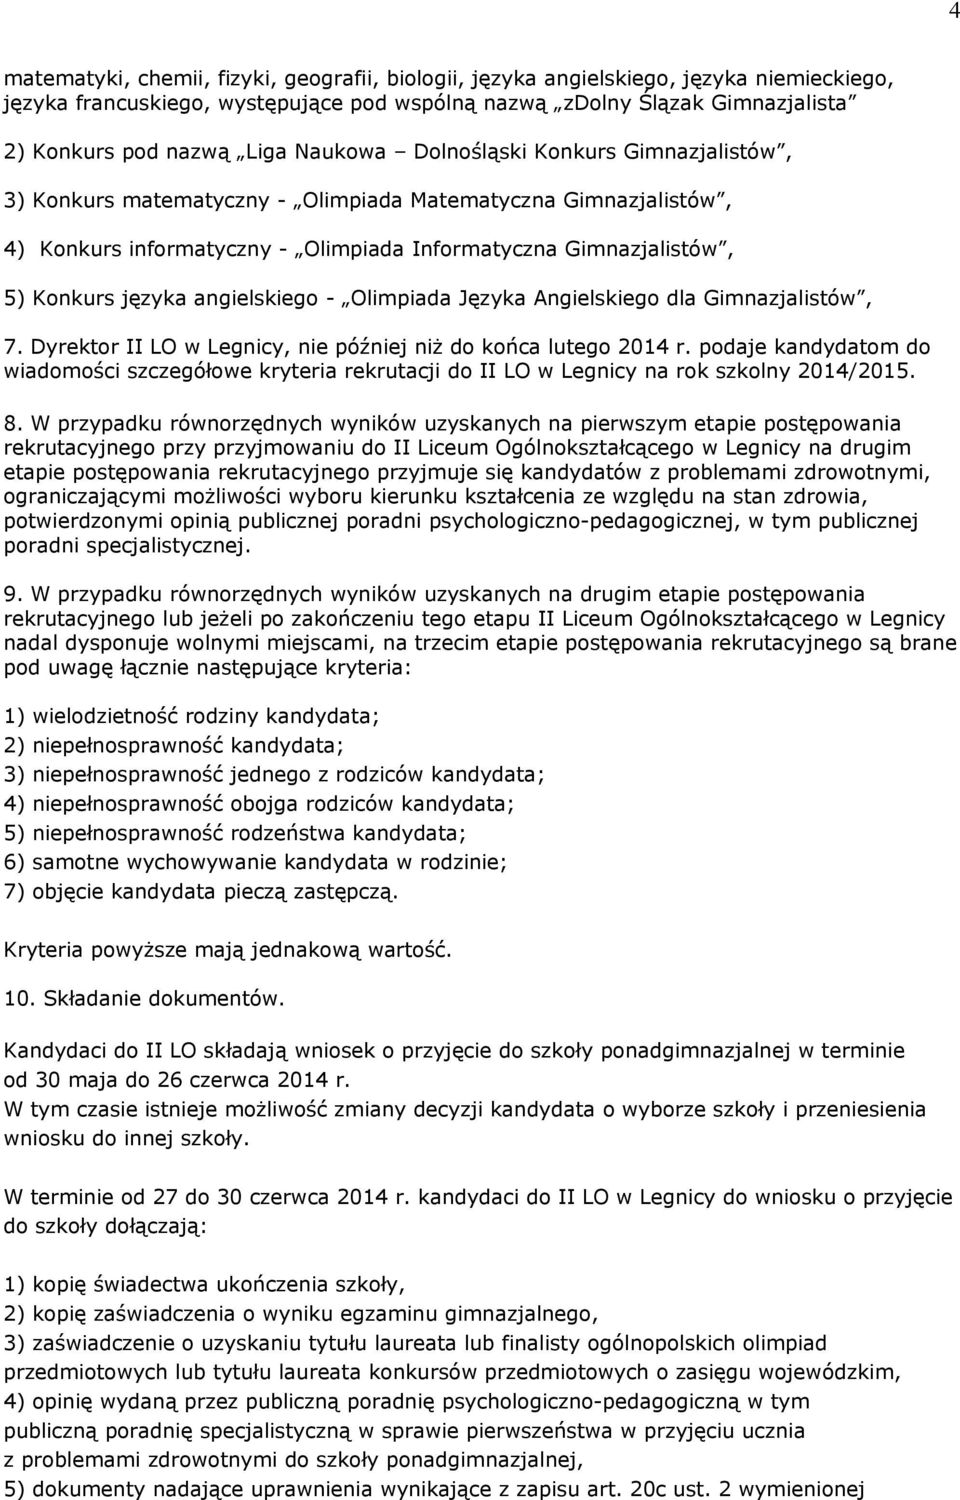 angielskiego - Olimpiada Języka Angielskiego dla Gimnazjalistów, 7. Dyrektor II LO w Legnicy, nie później niż do końca lutego 2014 r.